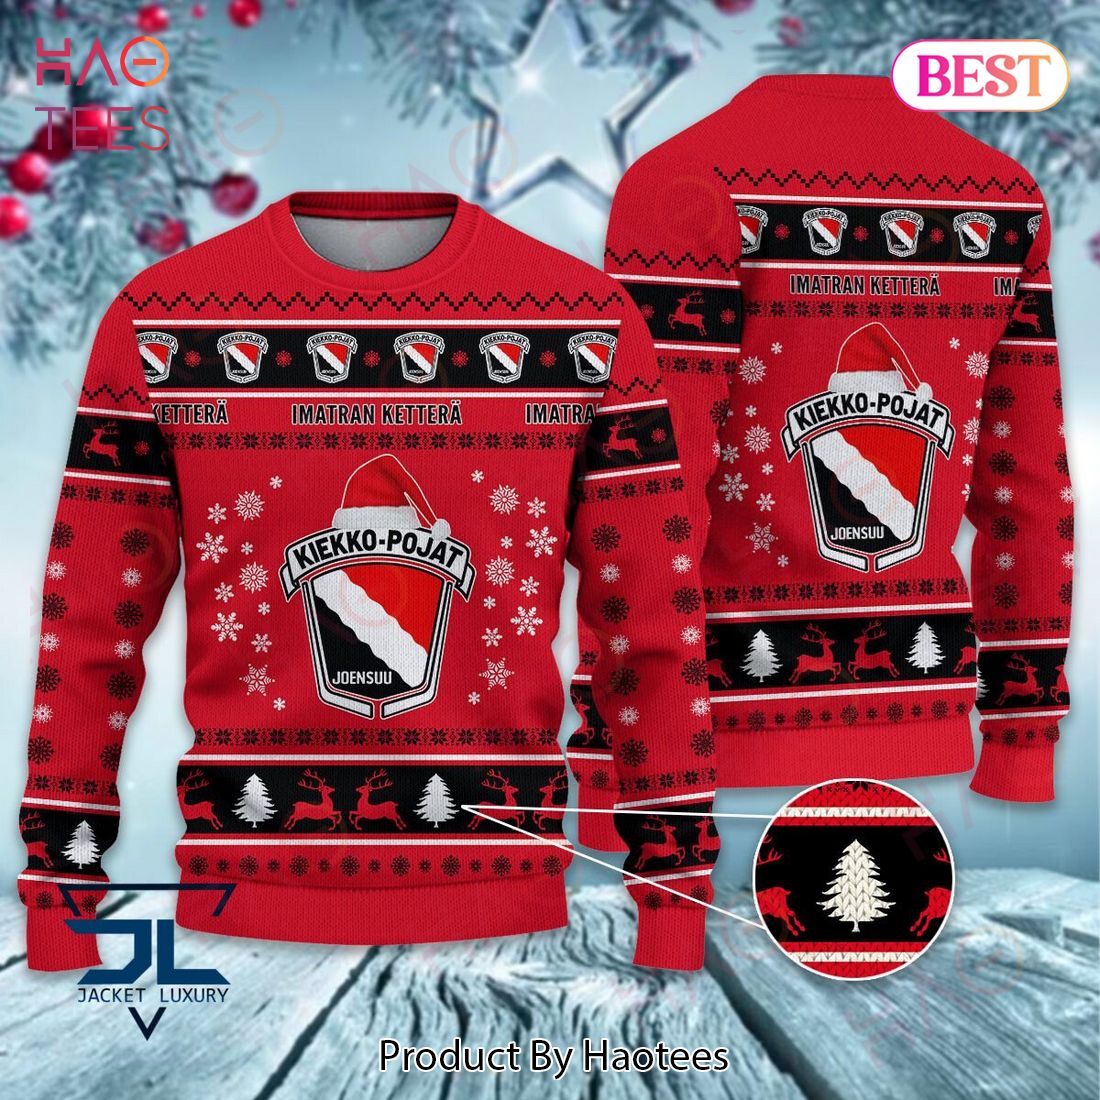 Joensuun Kiekko-Pojat Luxury Brand Sweater Limited Edition